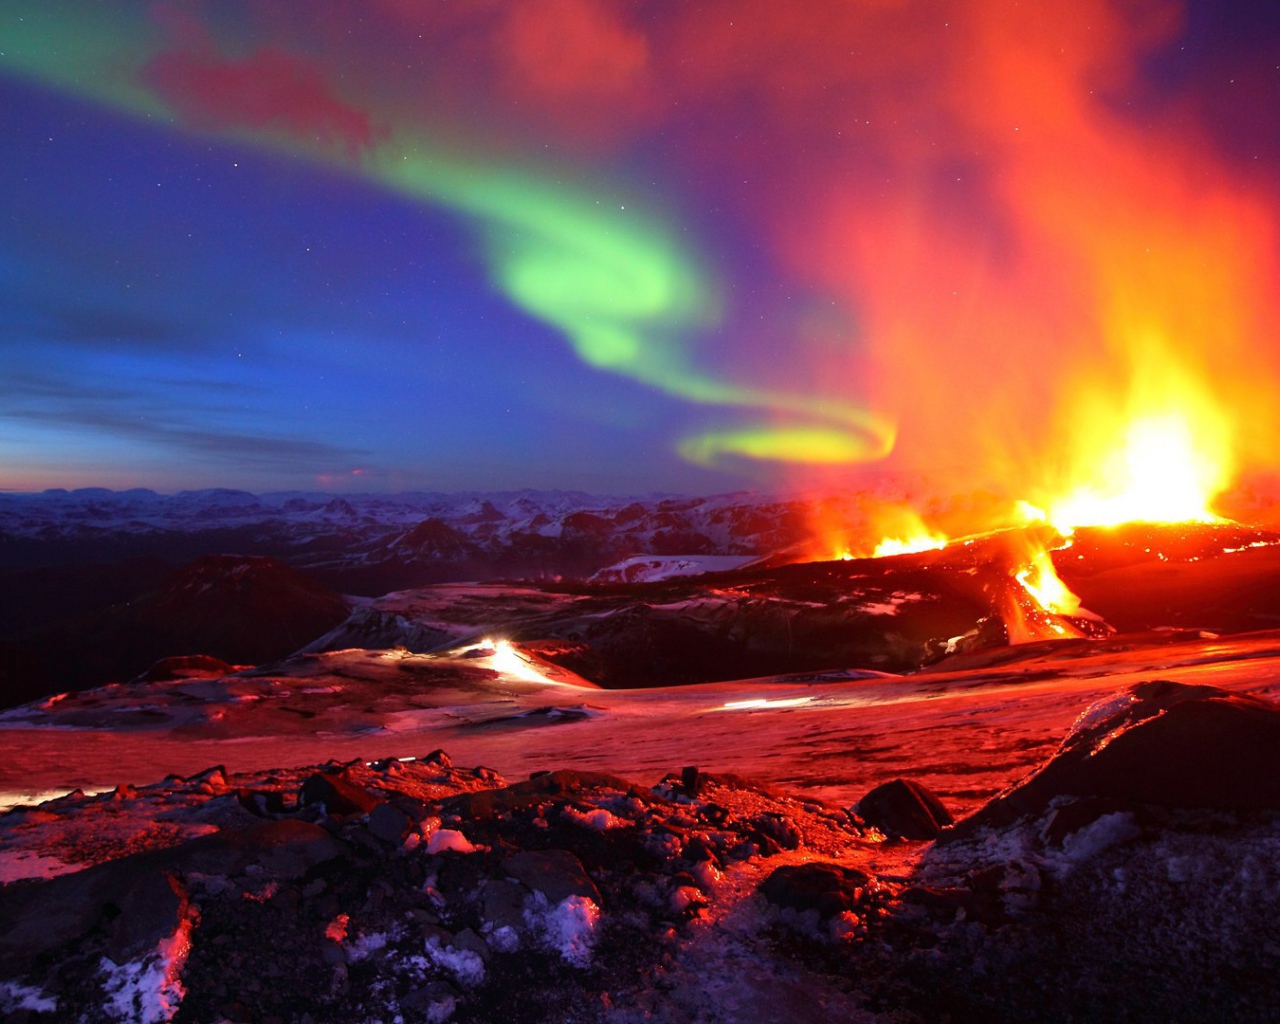 Извержение вулкана и северное сияние на одной фотографии. Исландия